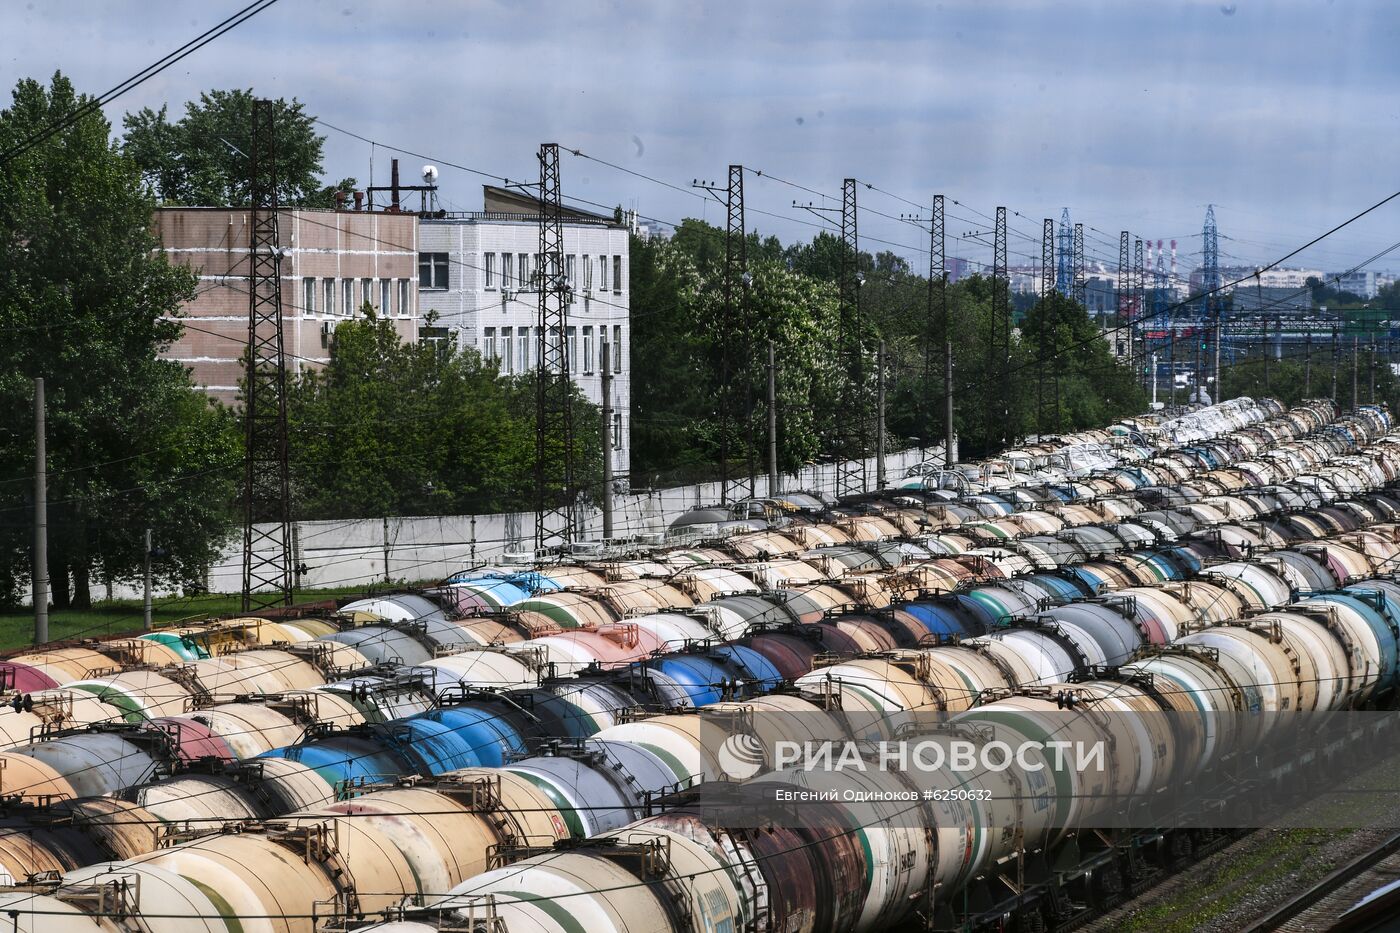 Товарные составы на железнодорожной станции "Яничкино"